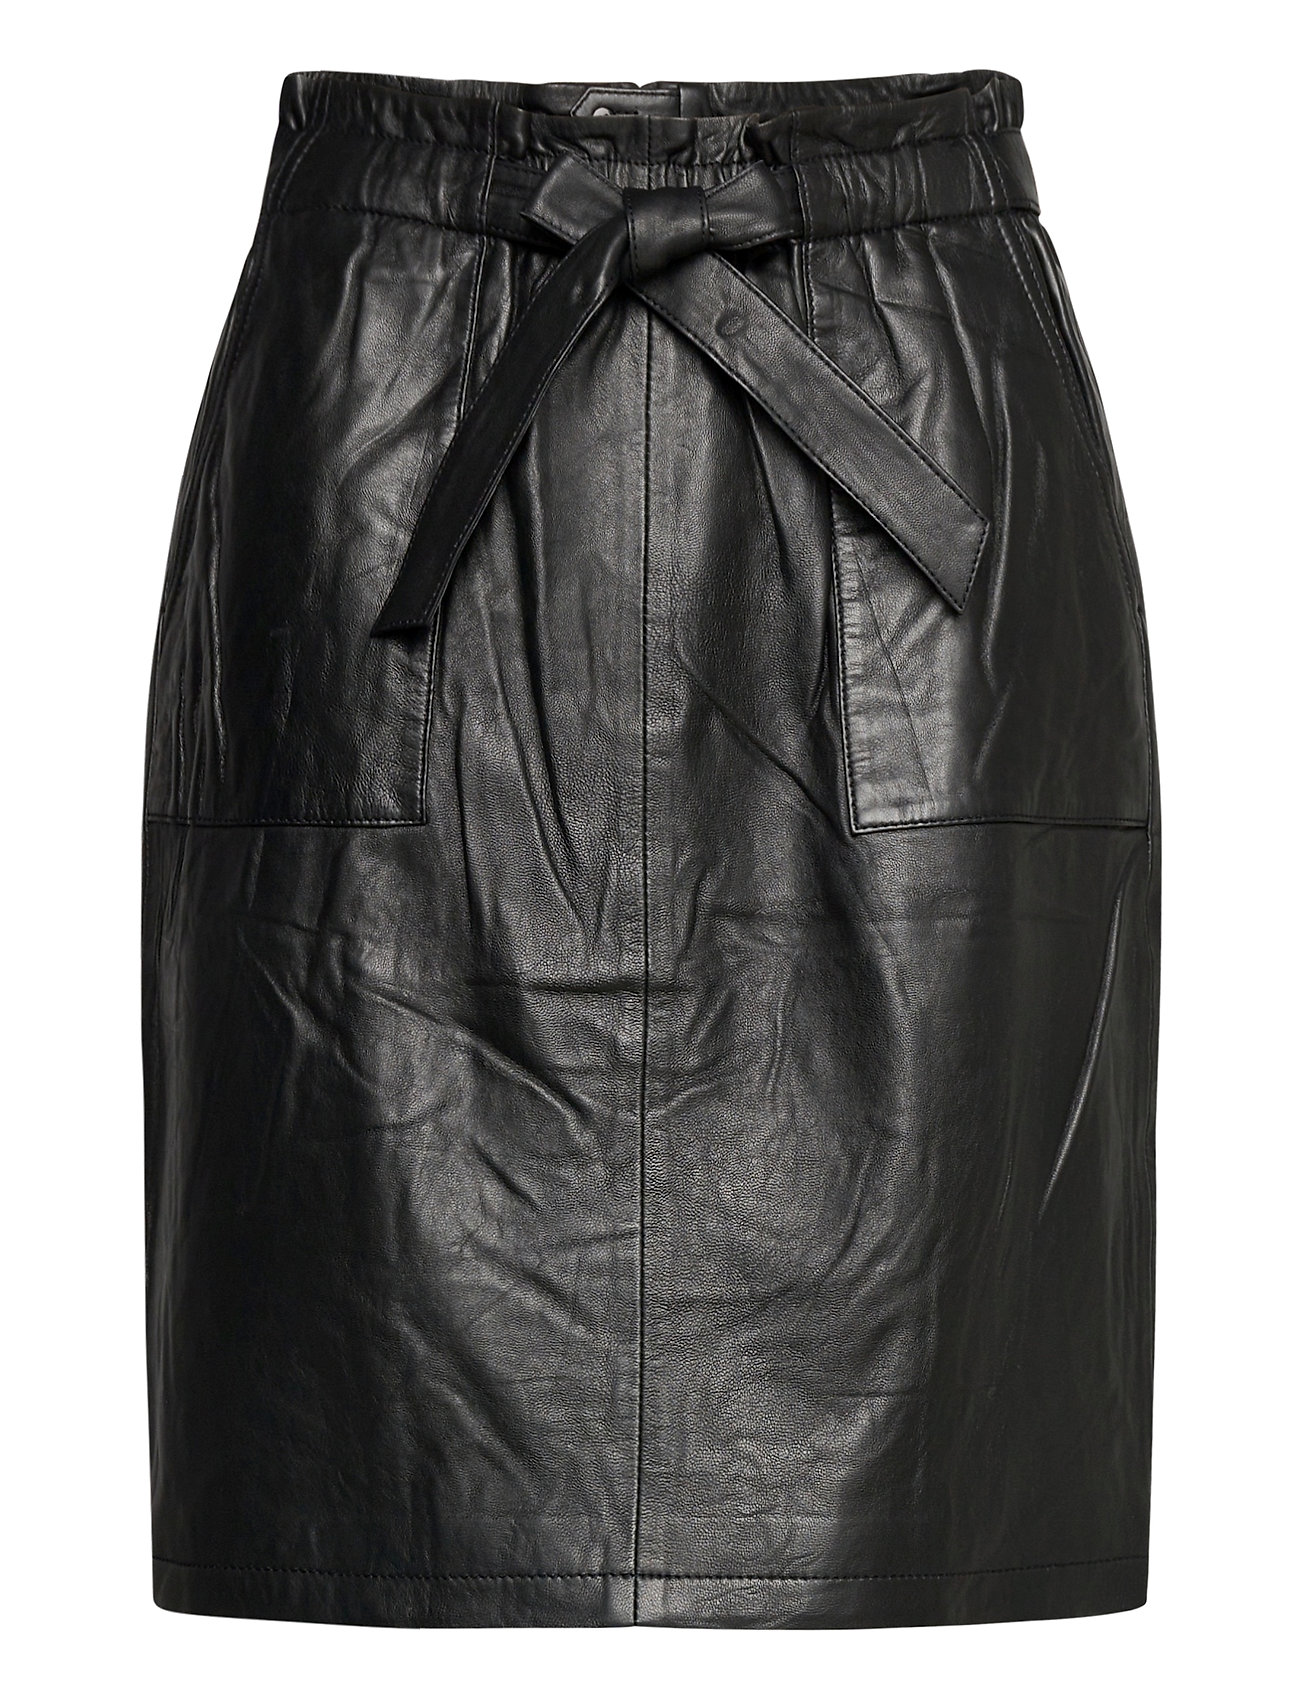 Sort Leather Skirt Knælang Nederdel Minus midi nederdele for dame - Pashion.dk